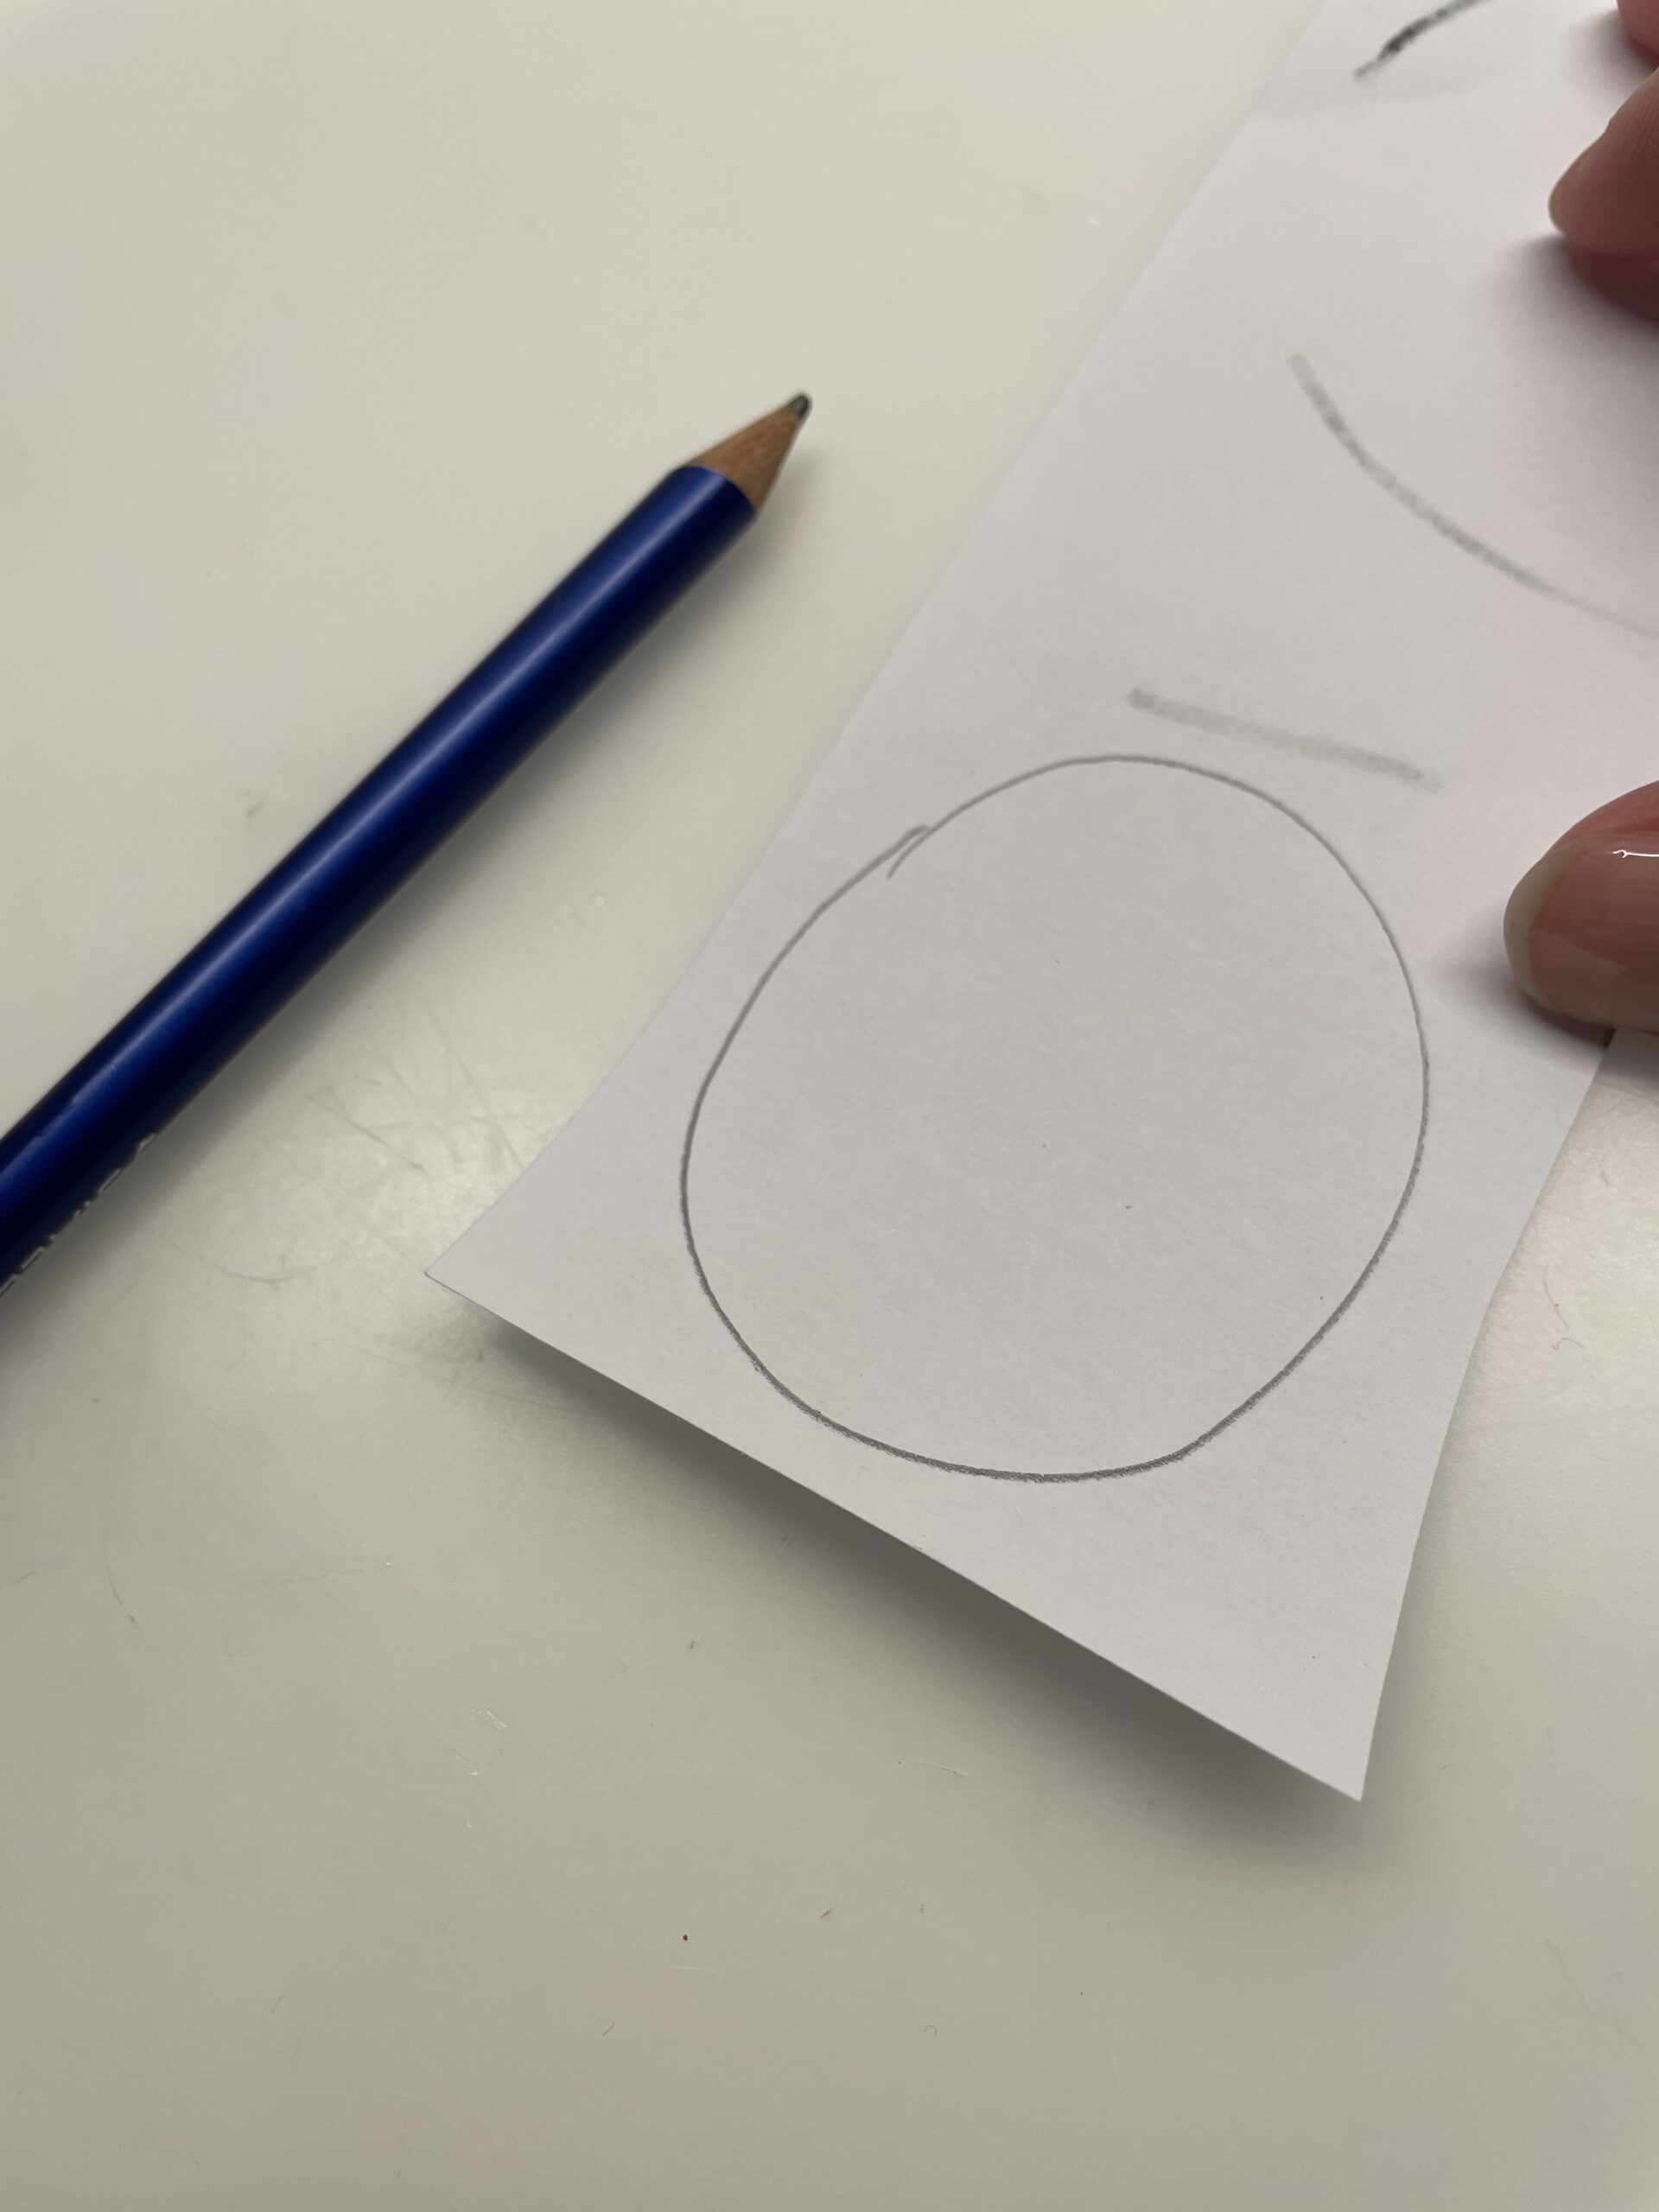 Bild zum Schritt 4 für das Bastel- und DIY-Abenteuer für Kinder: 'Jetzt malt ihr auf ein weißes Papier einen ovalen Kreis...'